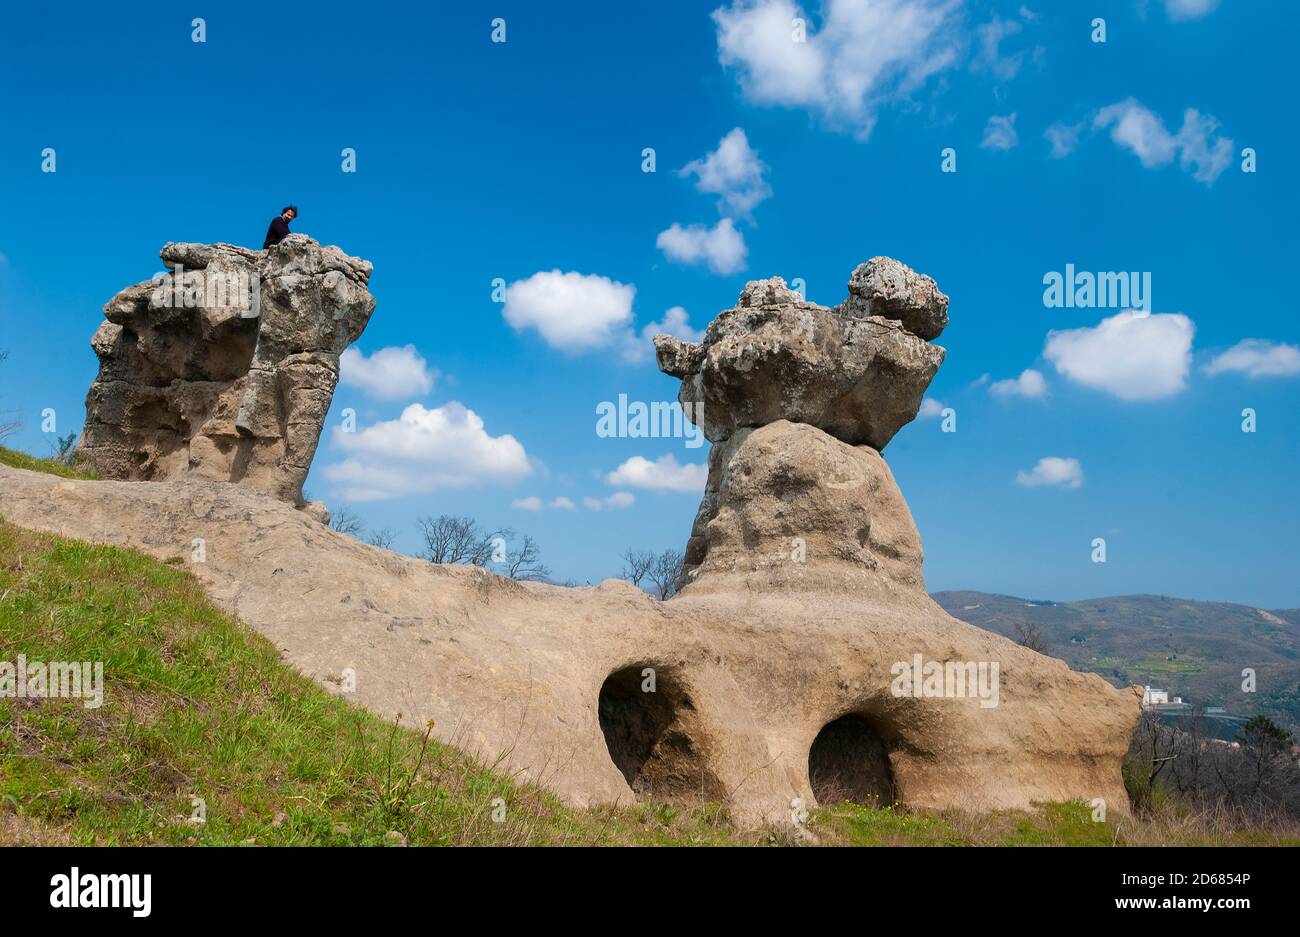 Italia Calabria - Provincia di Cosenza - Campana - i Giganti di pietra chiamati anche pietre dell'Incavallicata, sono due formazioni rocciose, che si ritiene siano effettivamente sculture megalitiche, nei pressi di Campana nel Parco Nazionale della Sila. Foto Stock